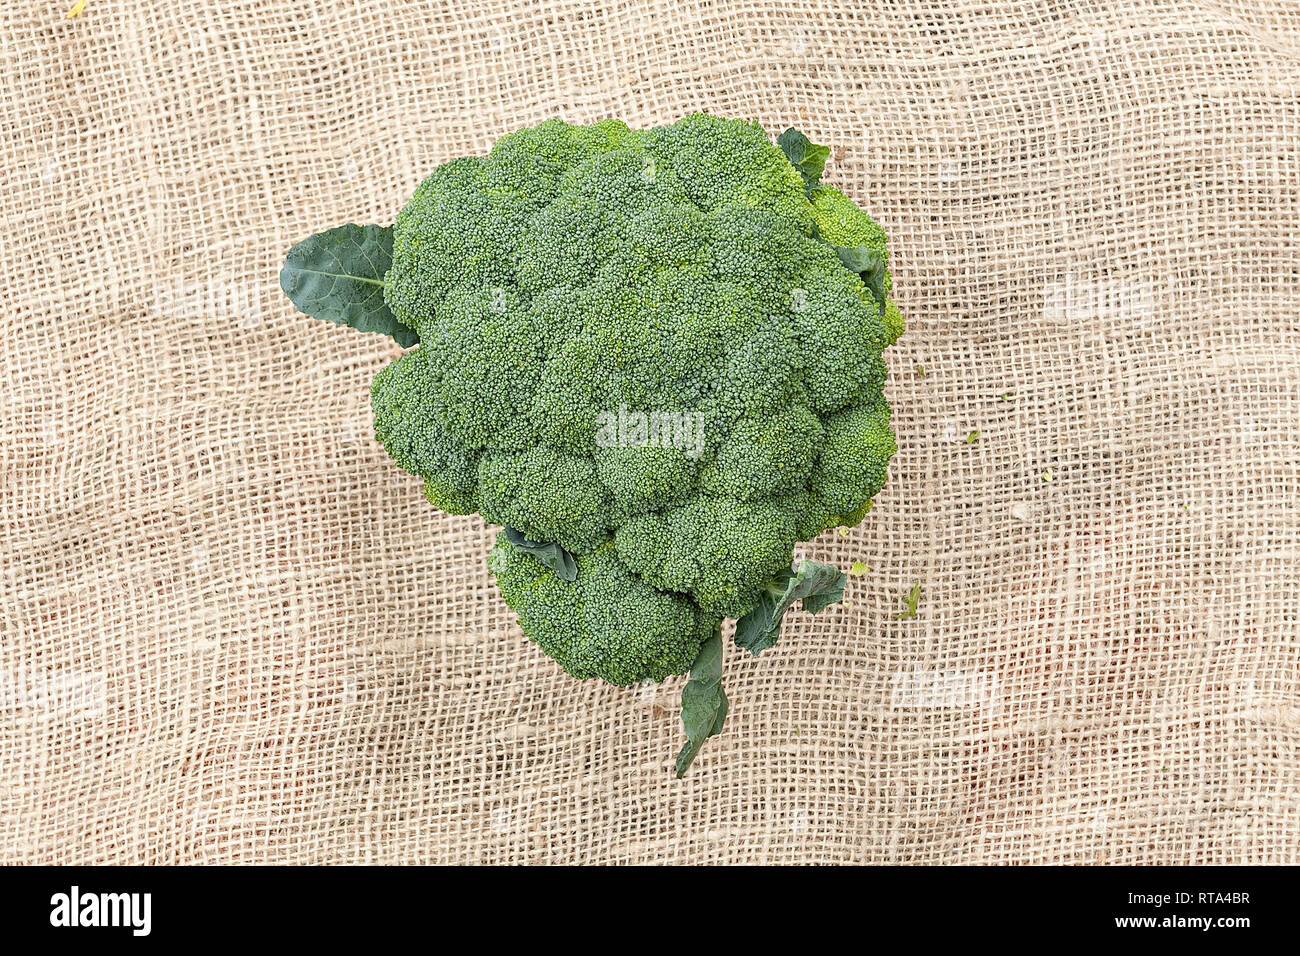 Ein Broccoli Kopf liegte auf Jute Stock Photo